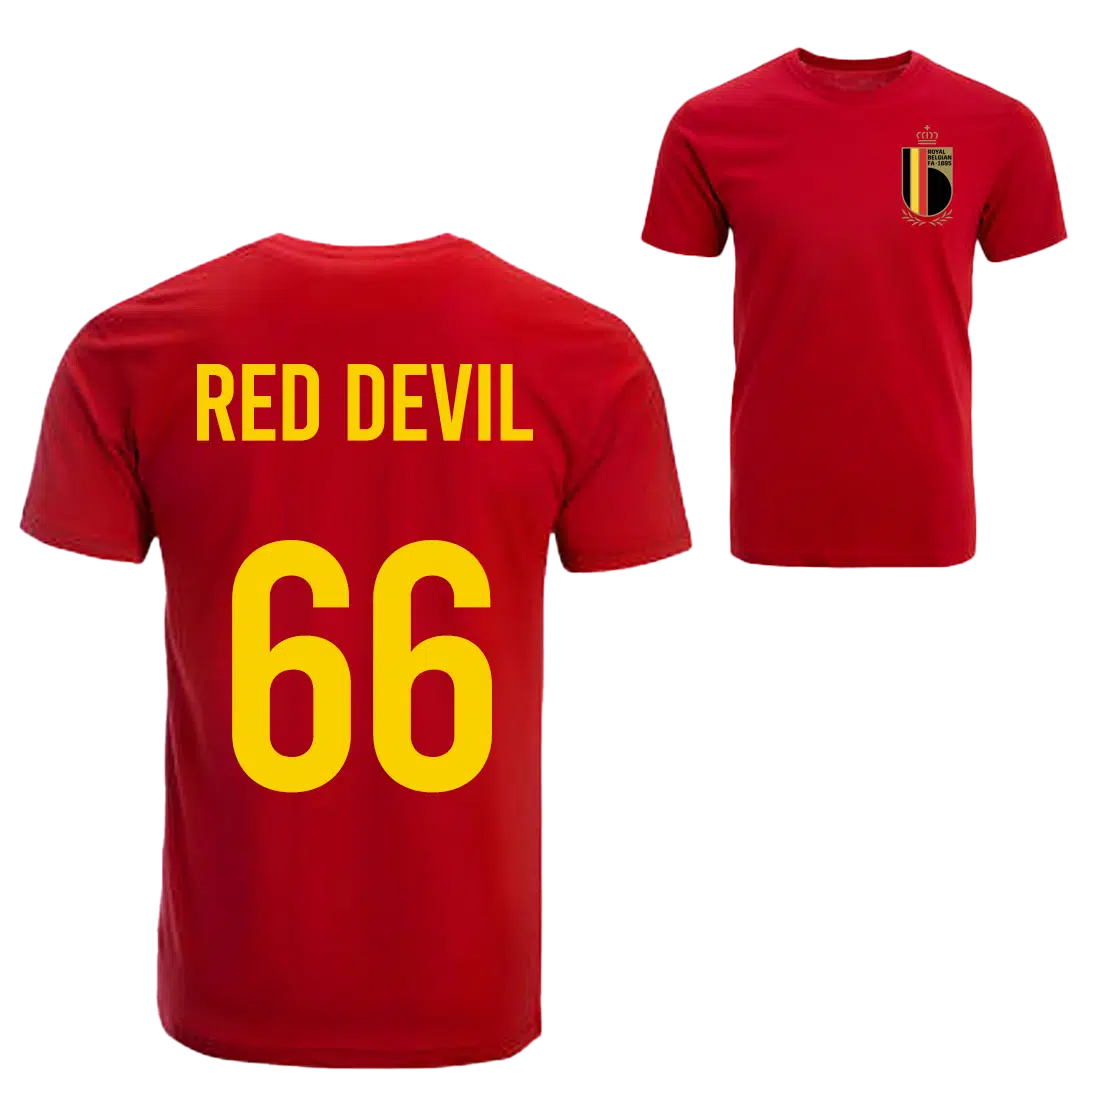 Red Devil Belgie voetbalshirt sfeer